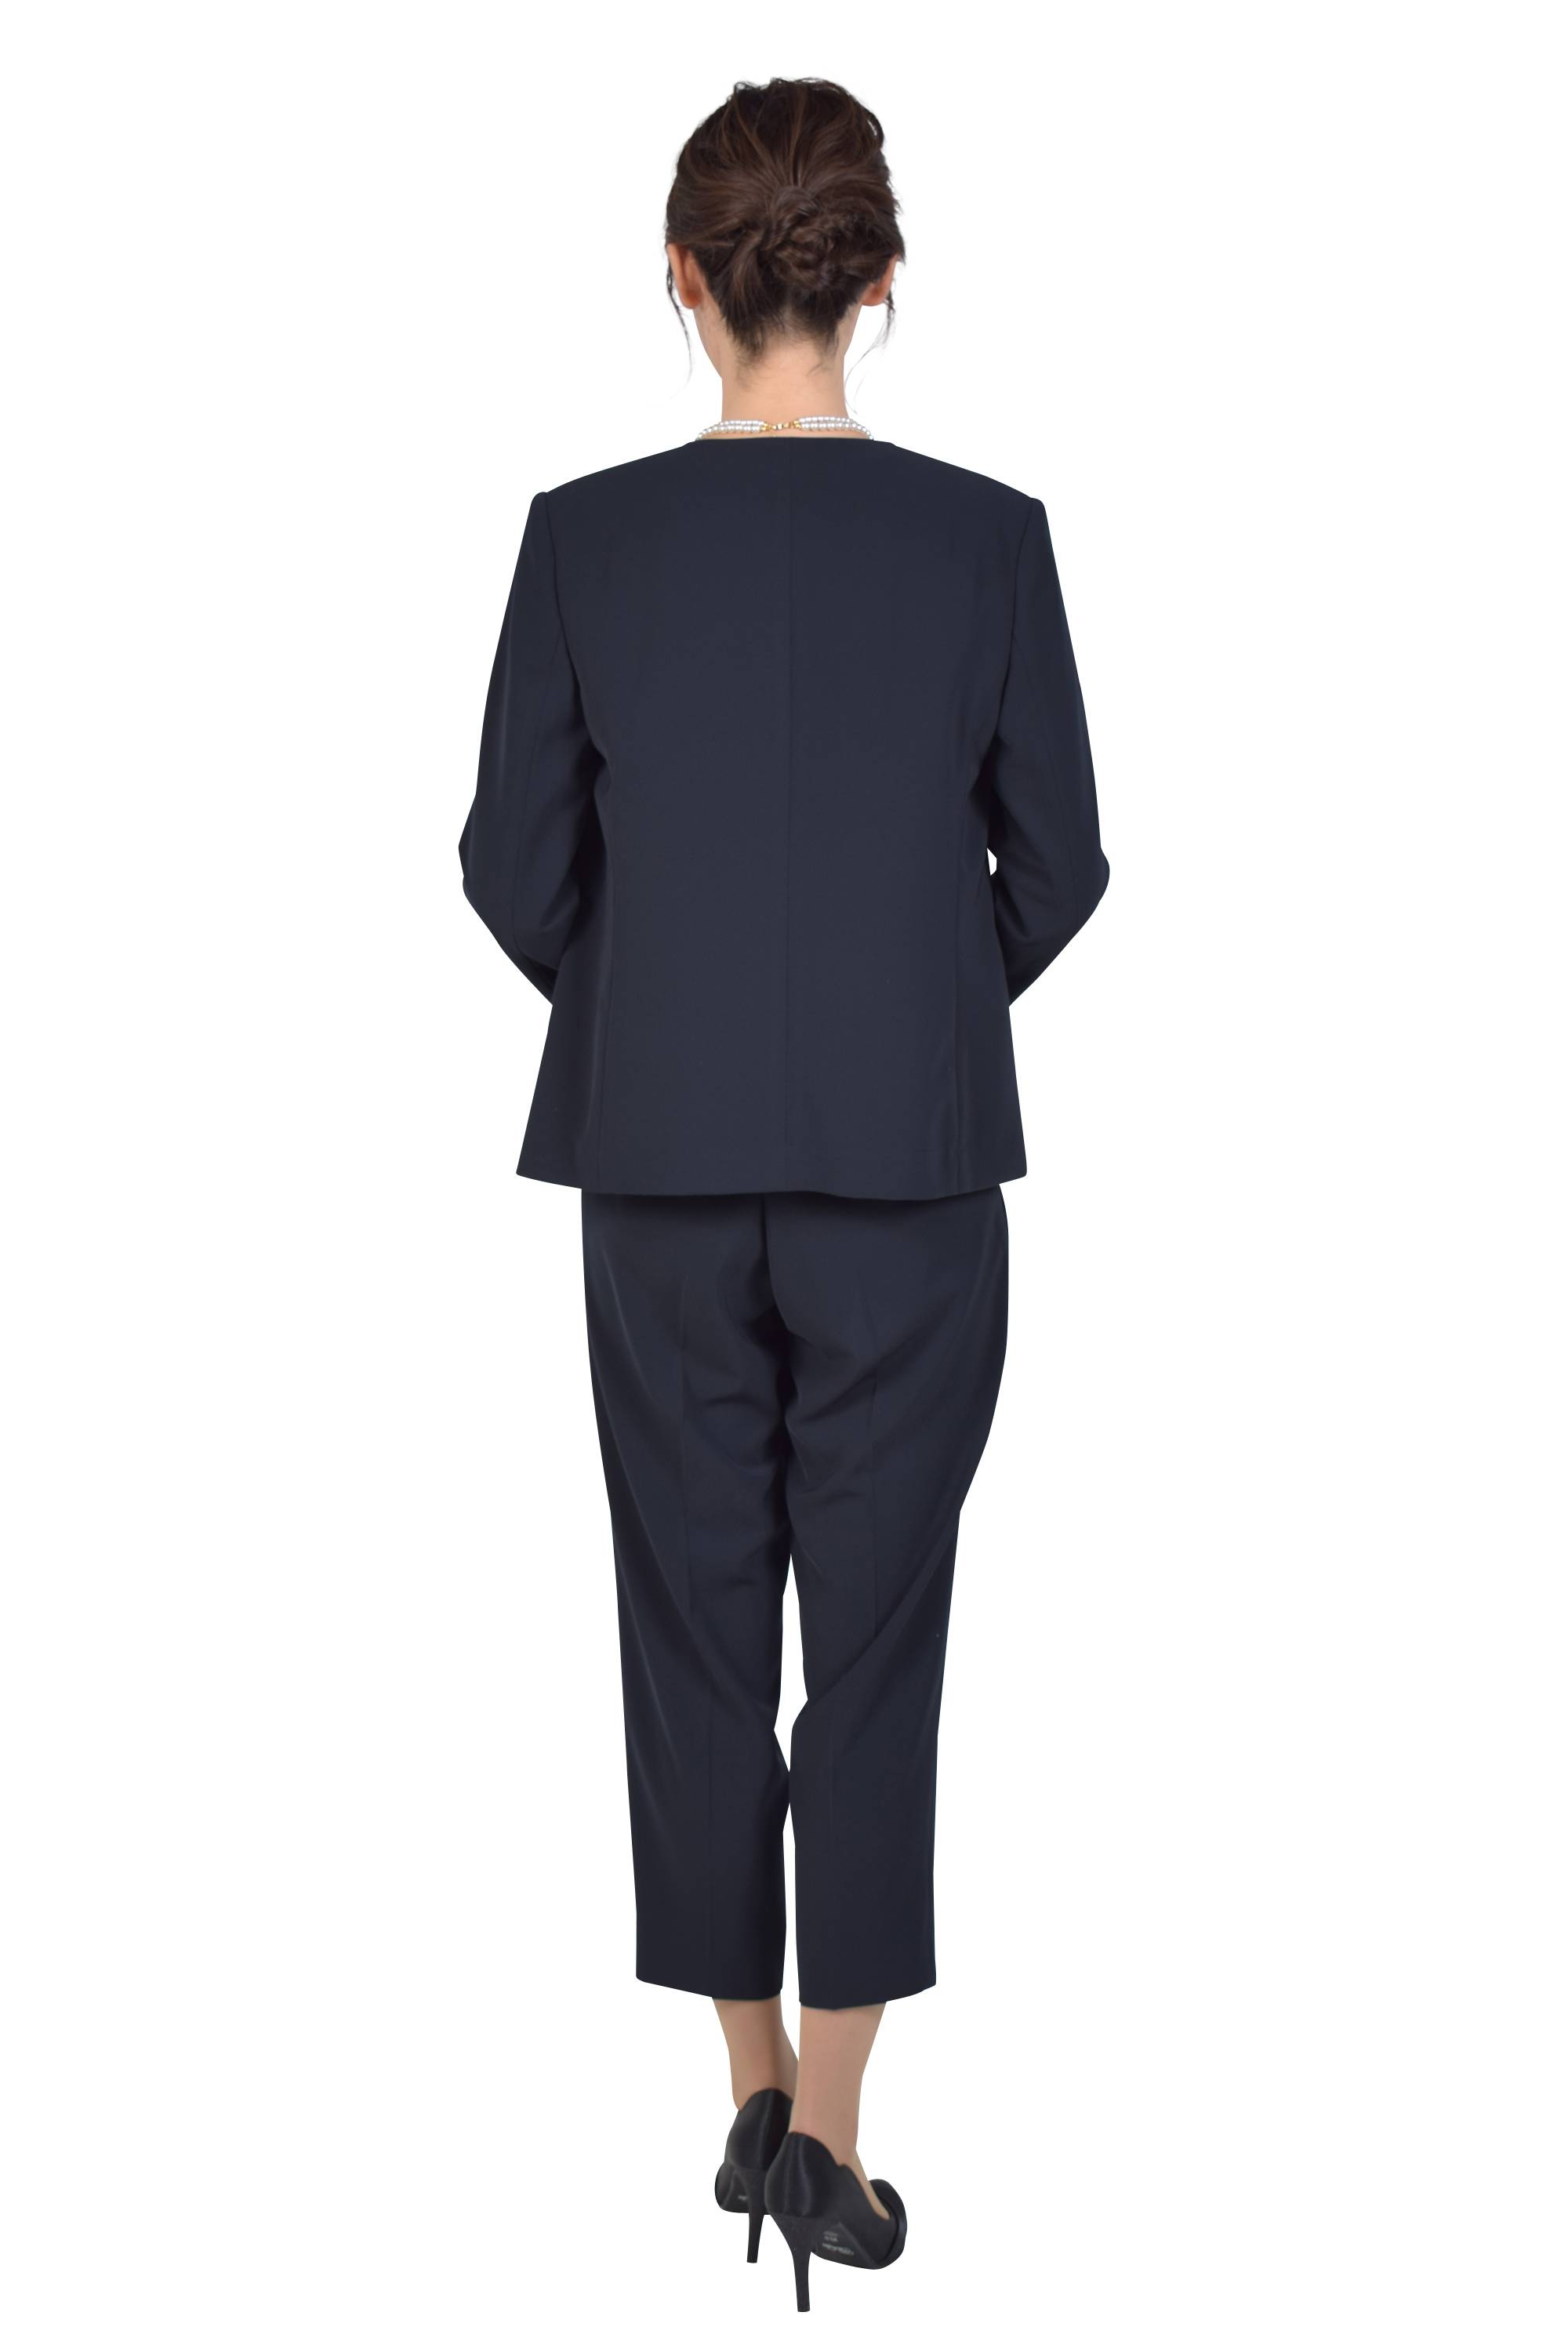 正規通販商品 ◾️MOGA パンツスーツ ネイビー - スーツ/フォーマル/ドレス